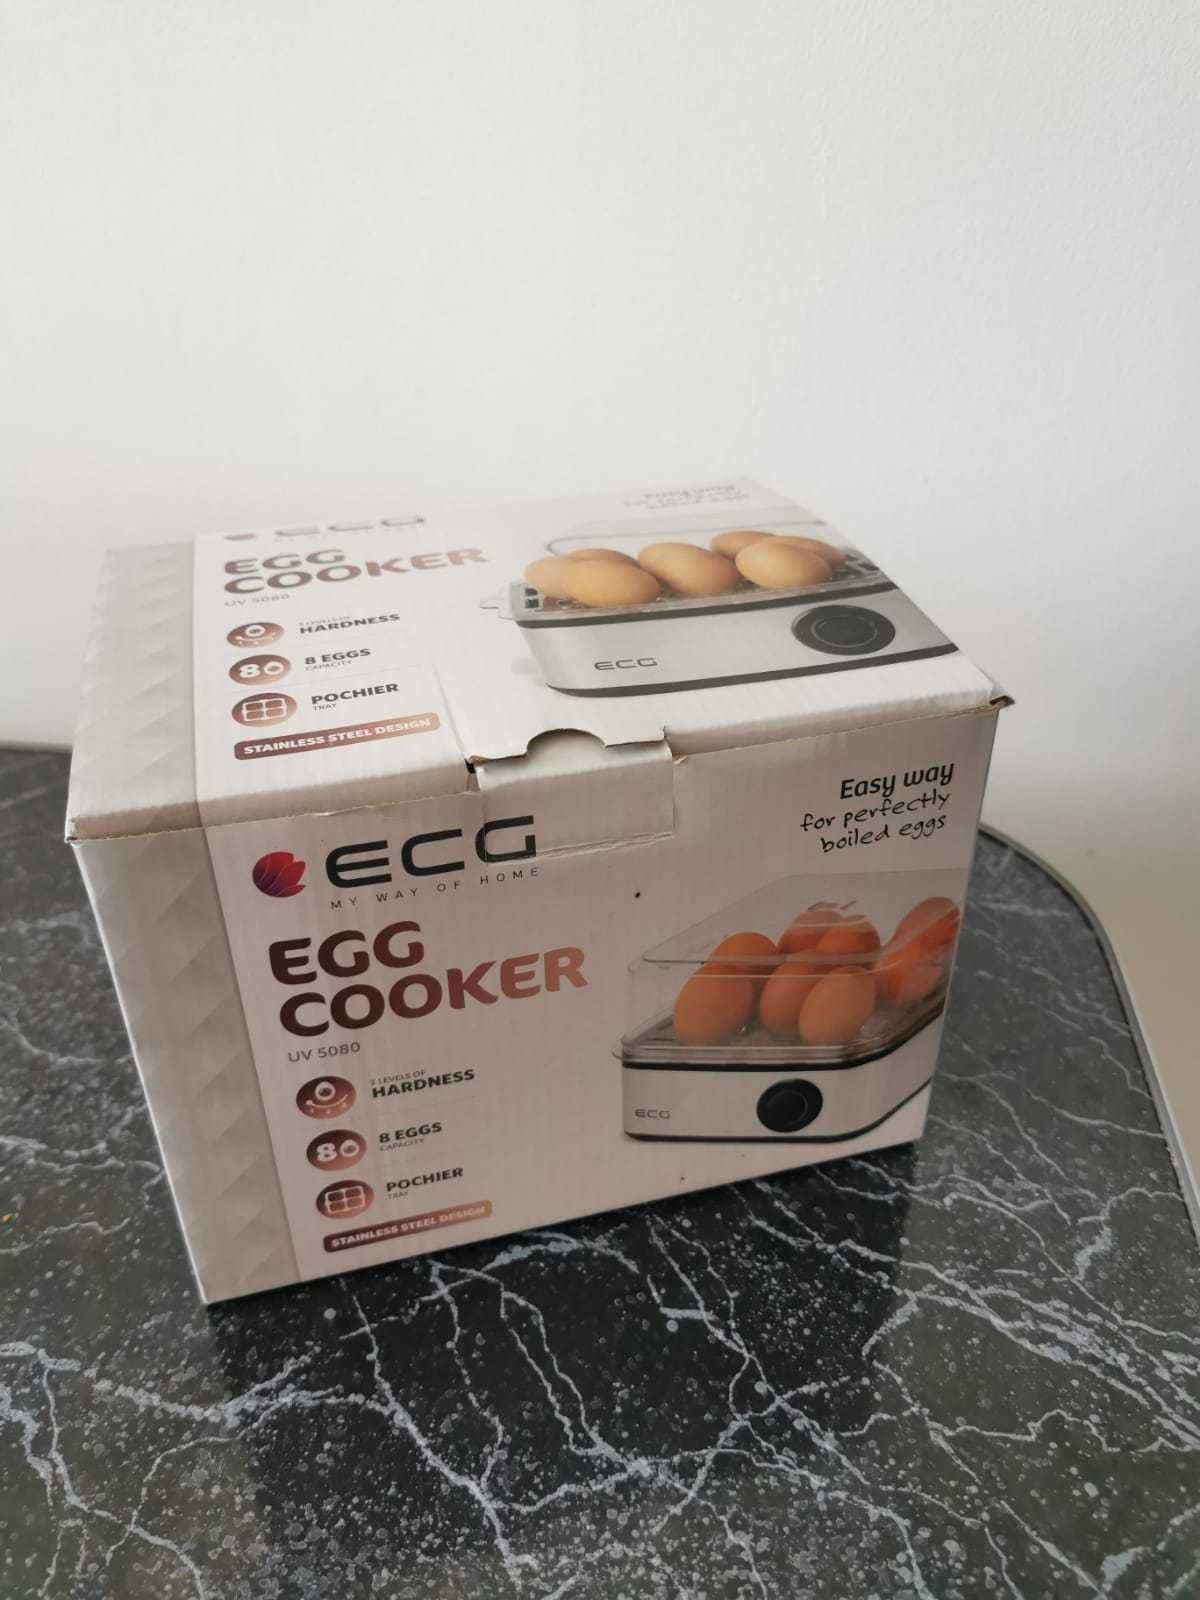 EGG Coker uv 5080